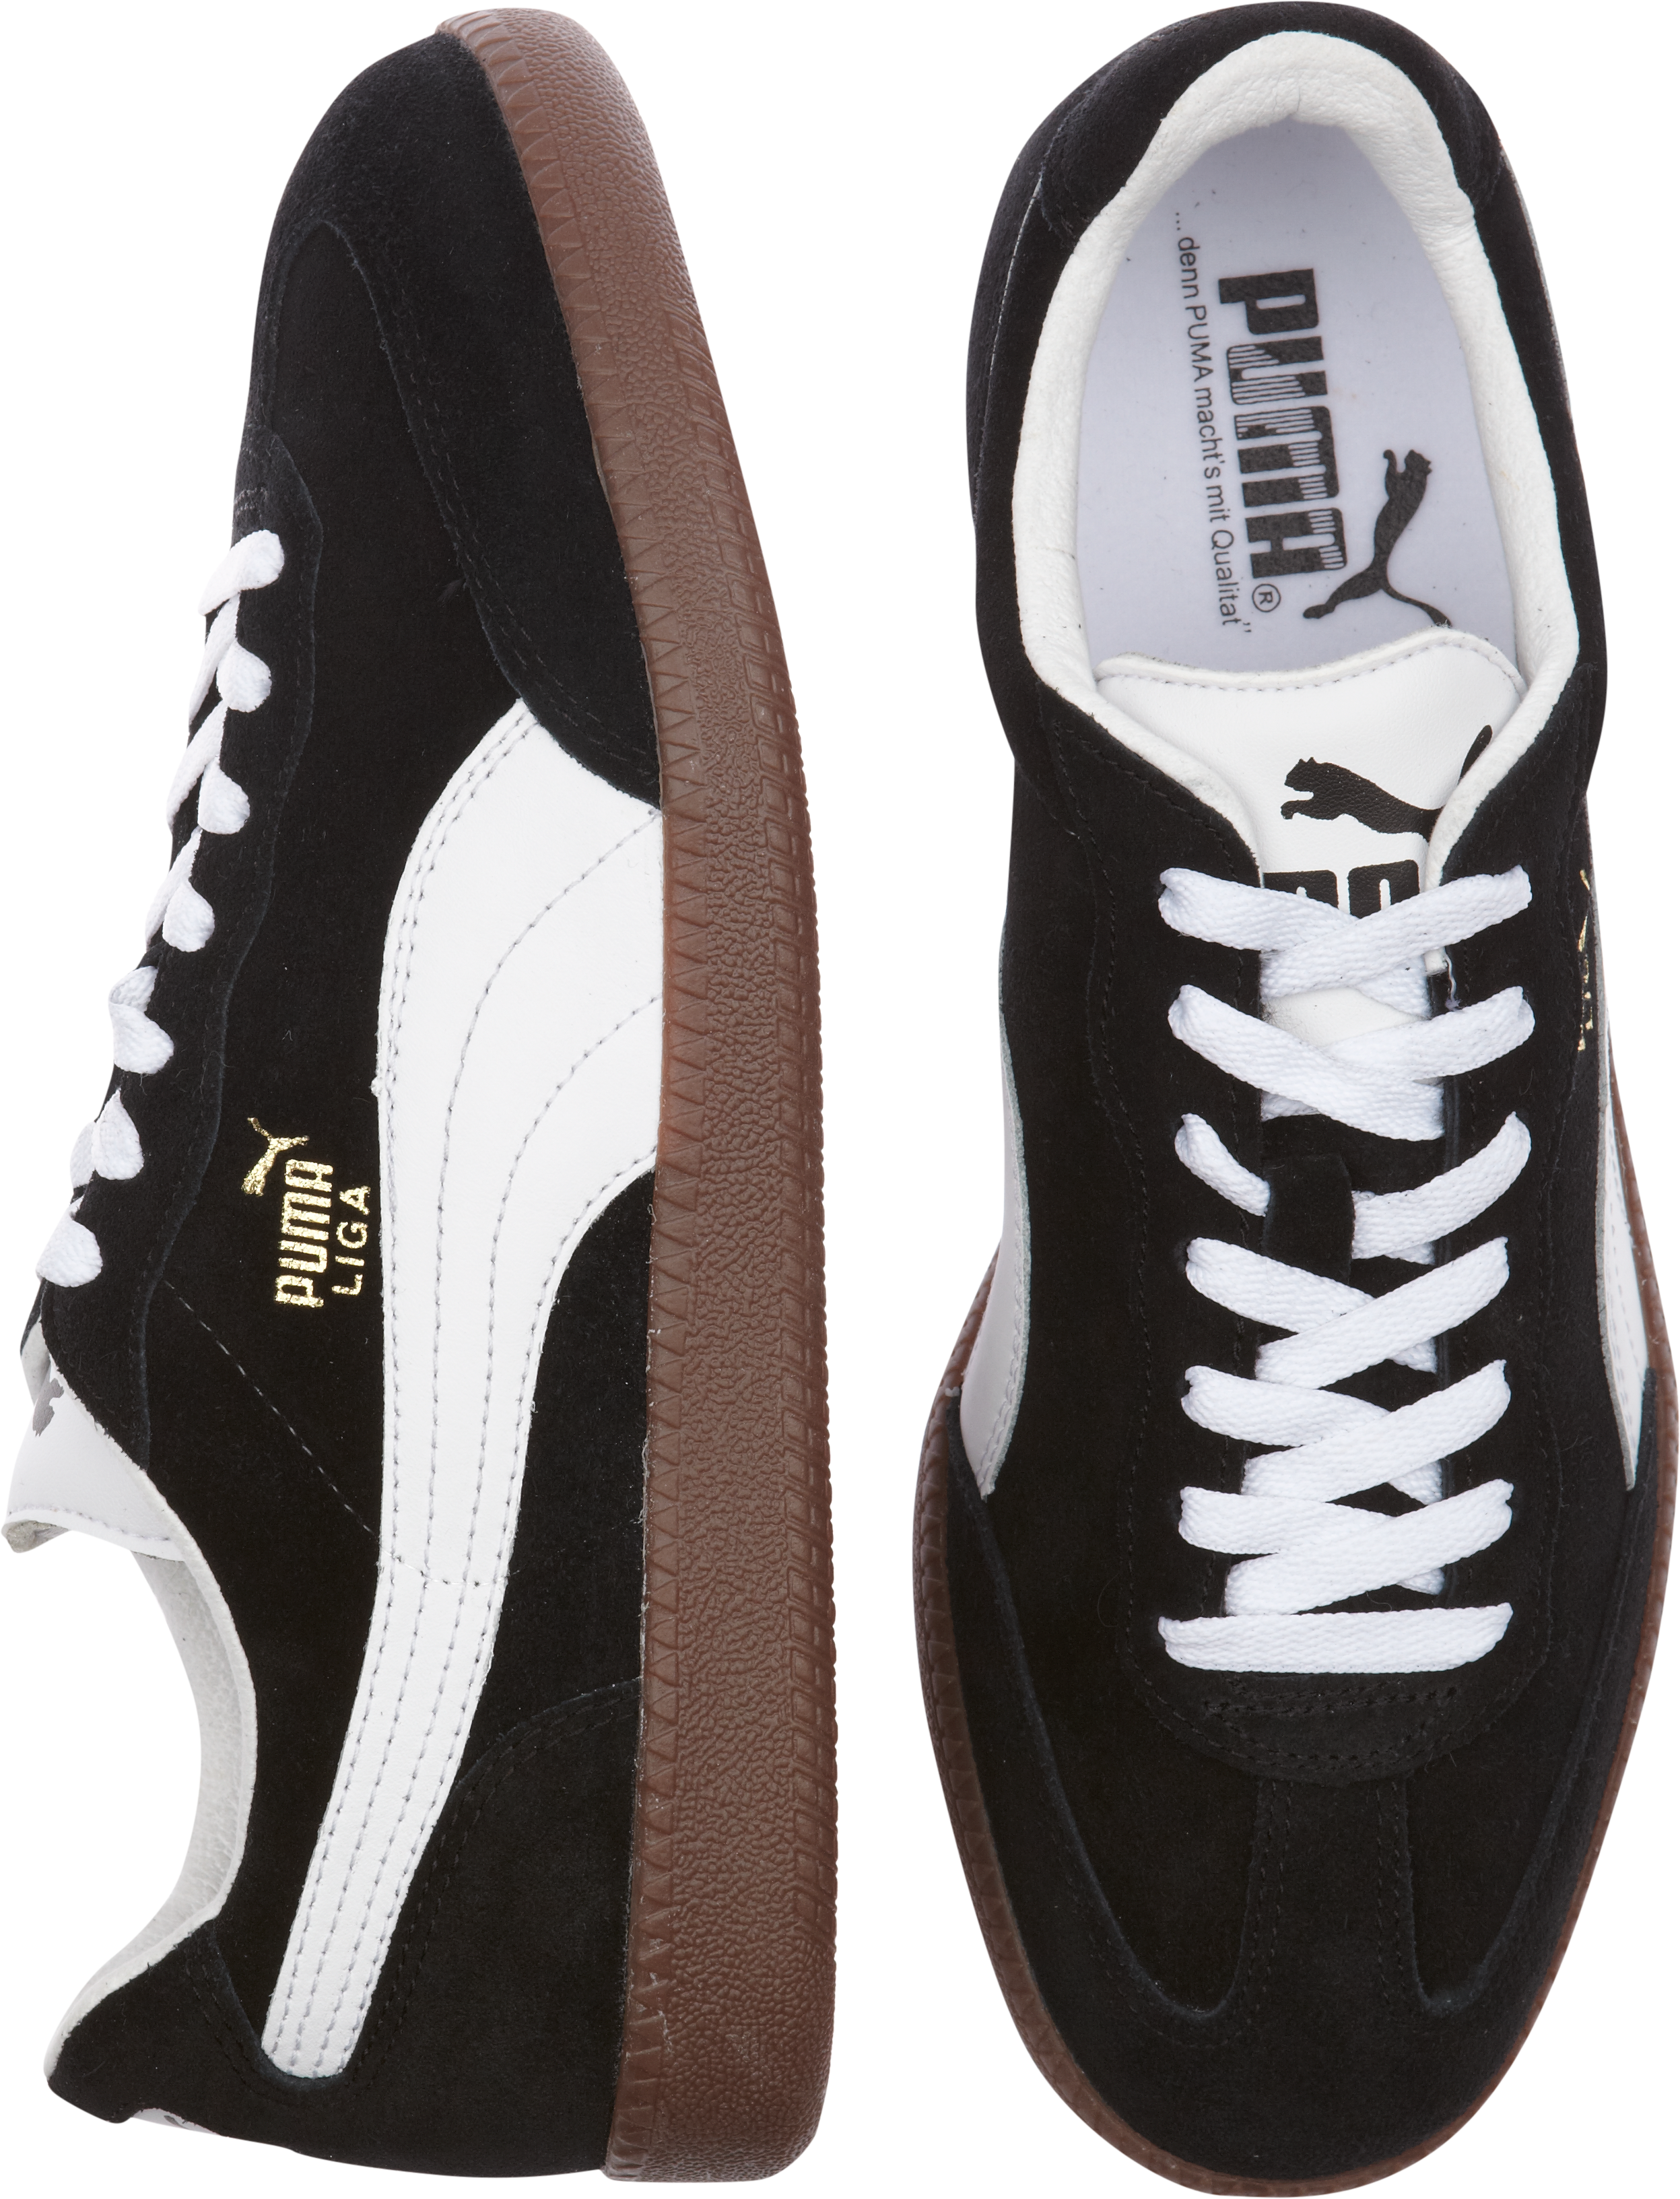 puma liga black and white sneakers